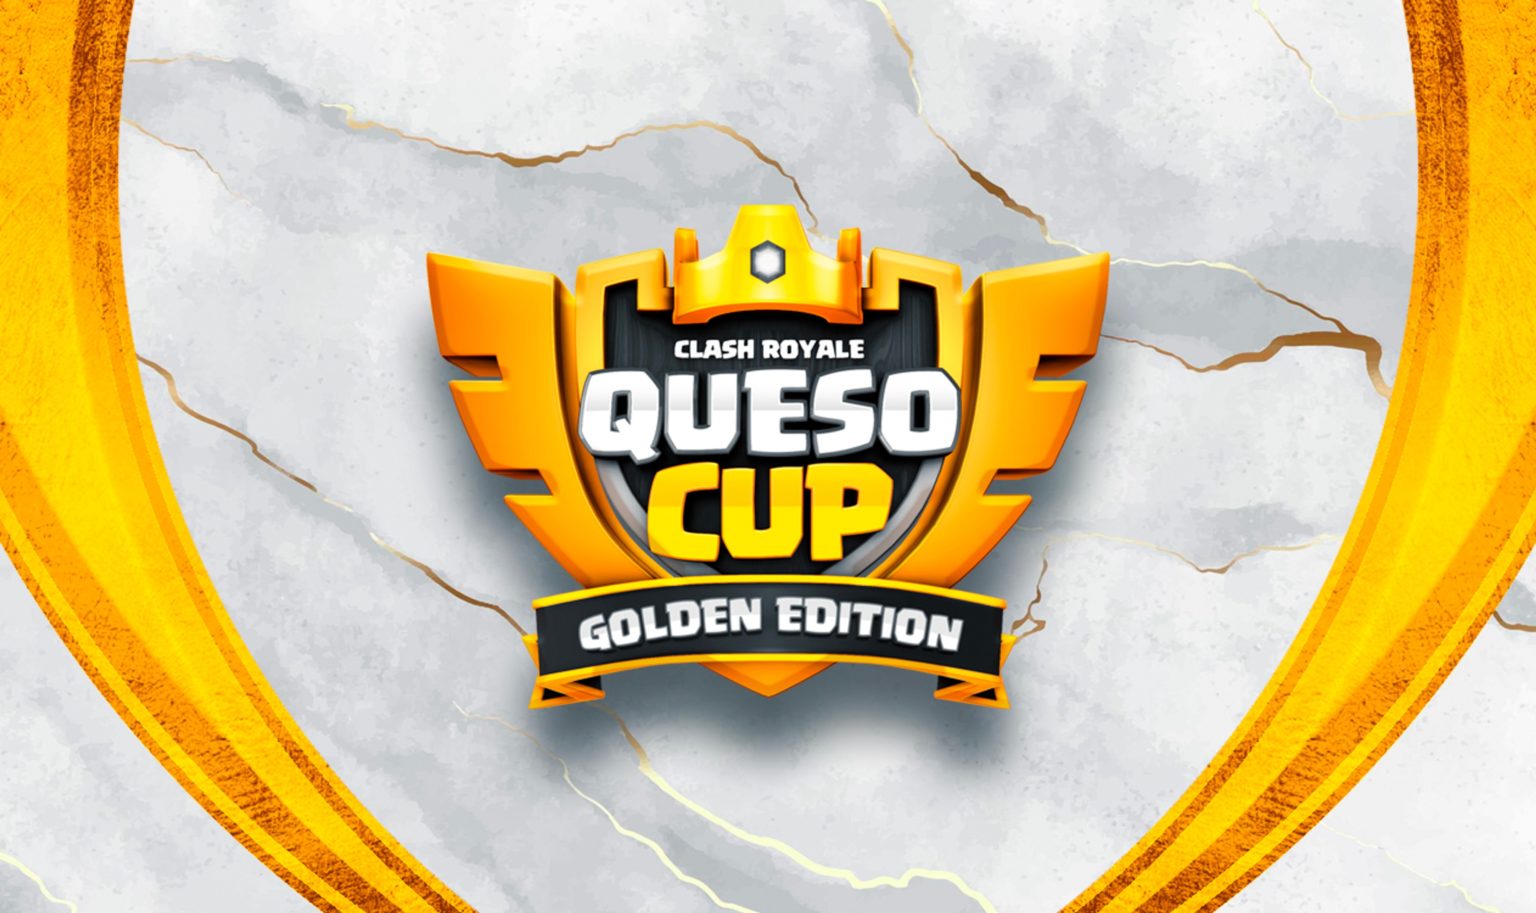 Le tournoi Clash Royale Queso Cup Golden Edition donne un ticket d'or pour la finale mondiale CRL 2022